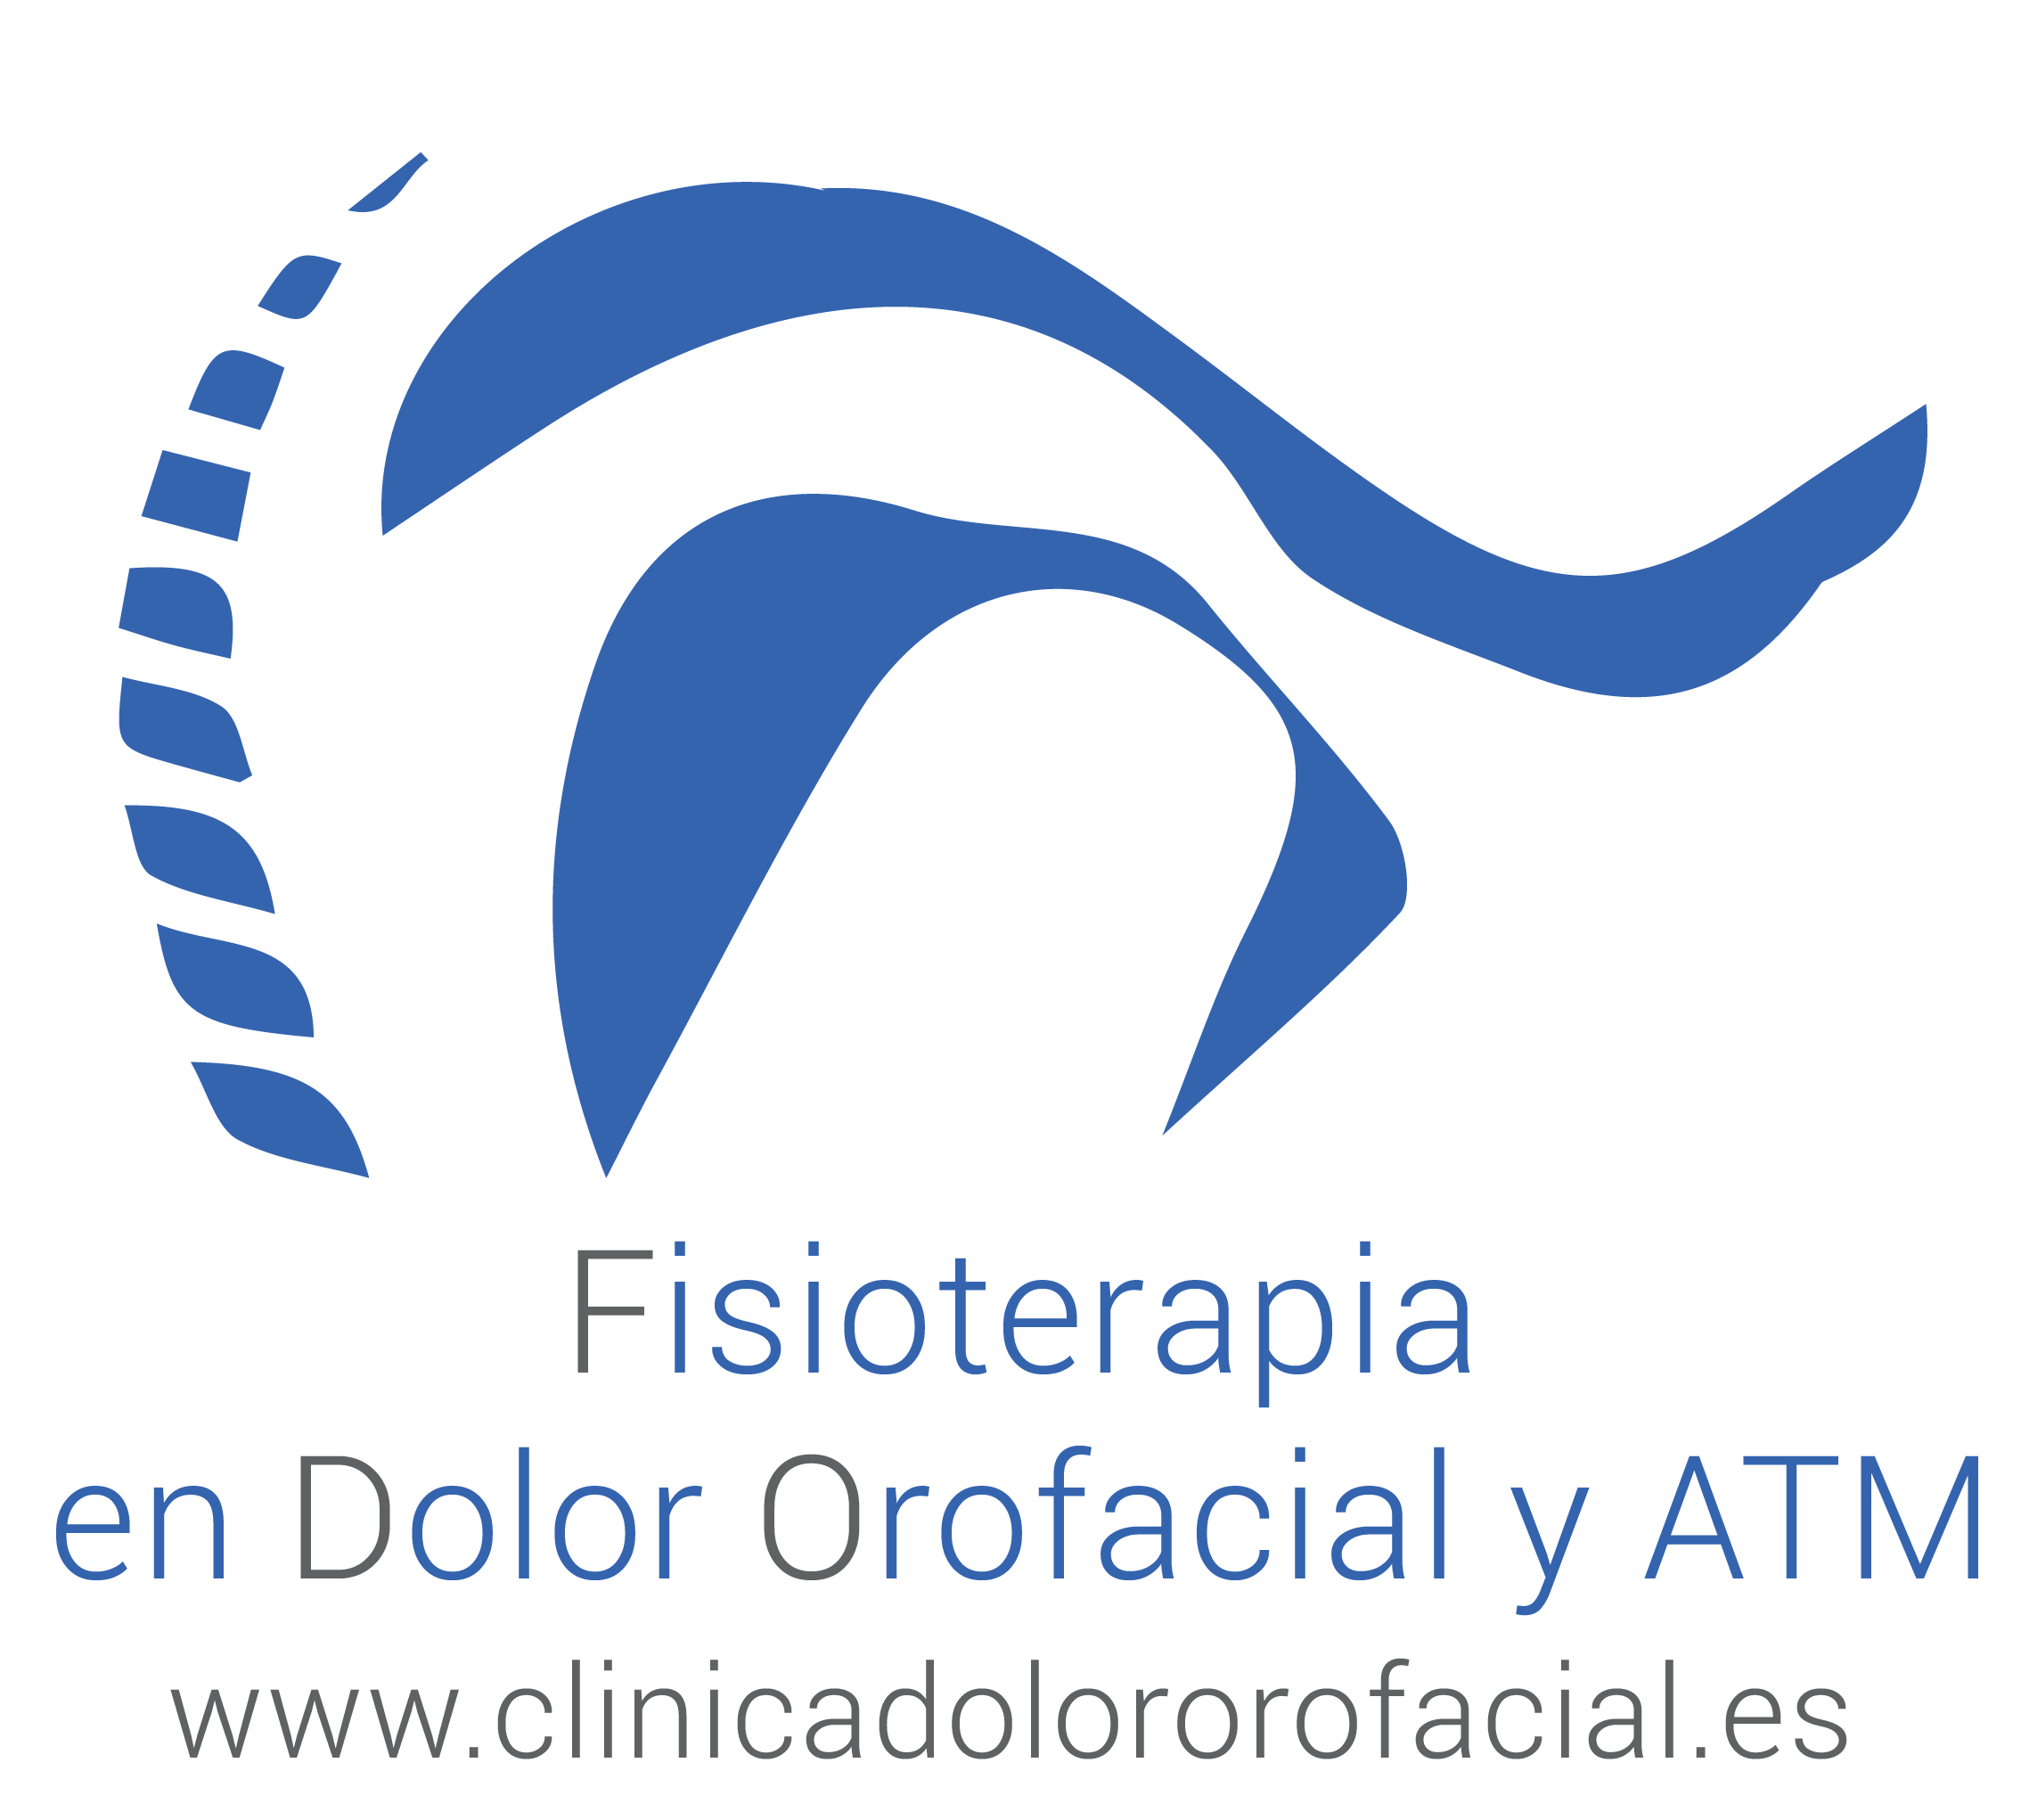 Clinica Dolor Orofacial